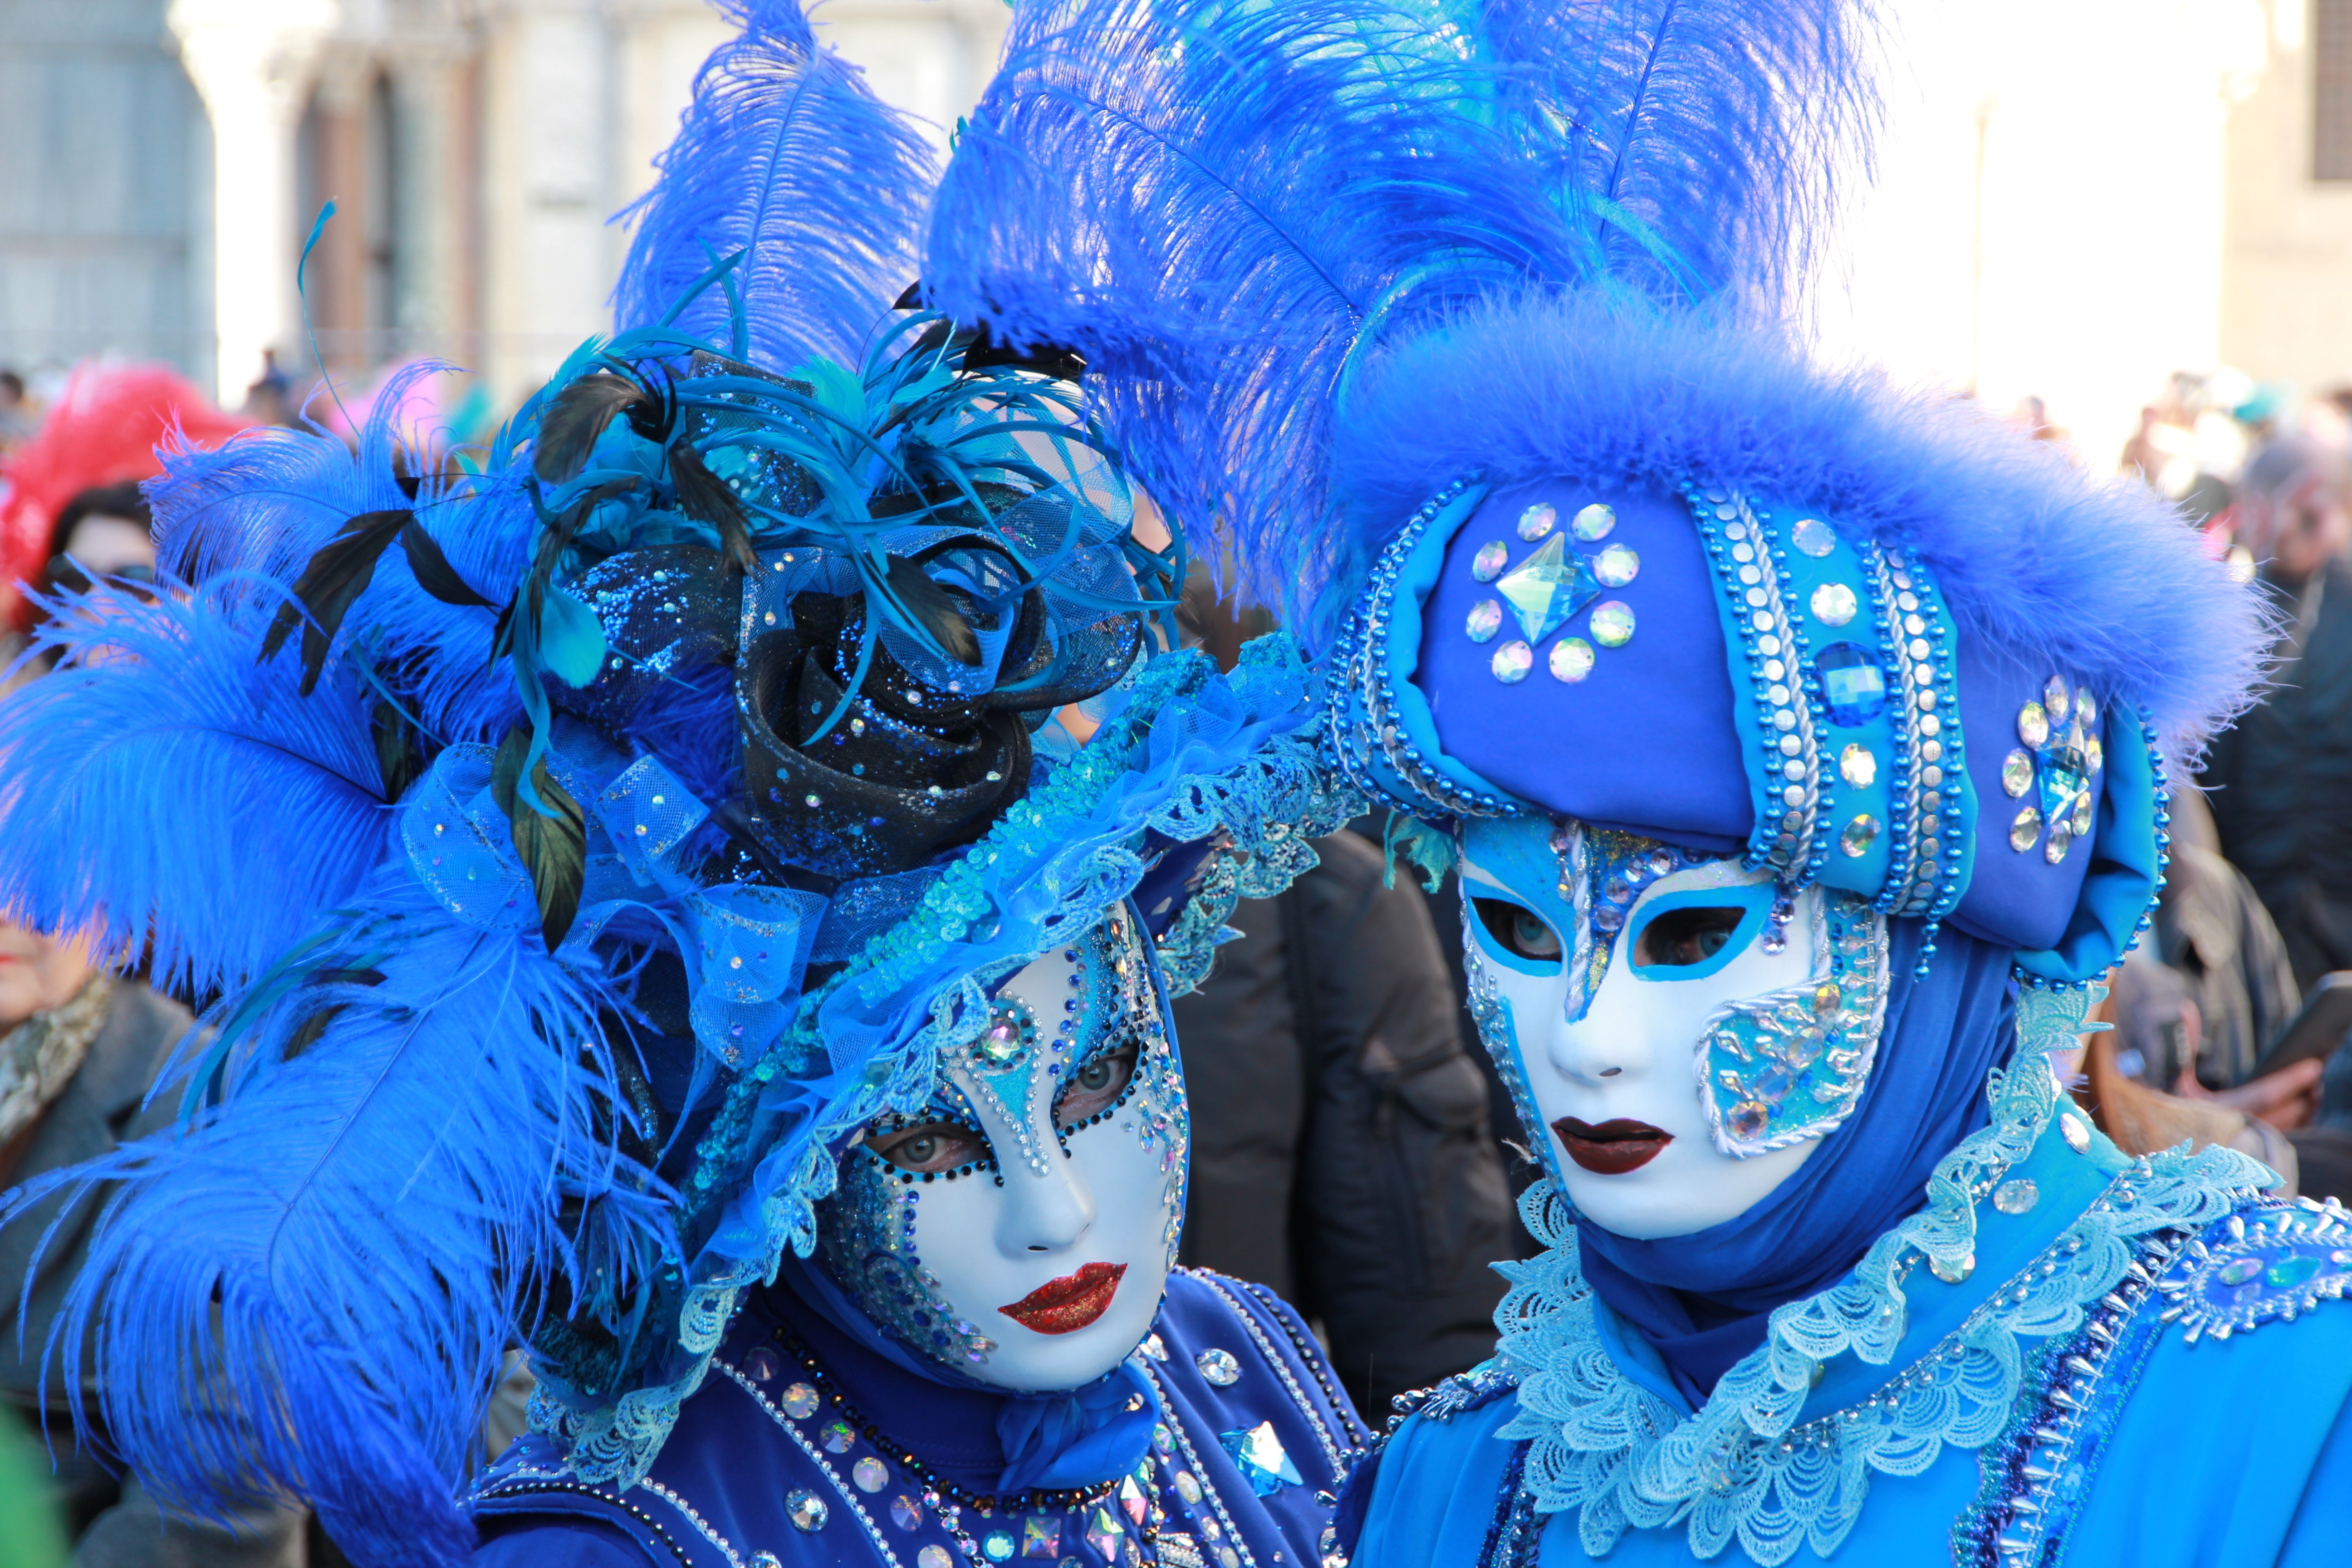 Одевали карнавал. Маска для карнавала. Новогодний карнавал. Карнавальная маска в цвете. Карнавал красивые фото.